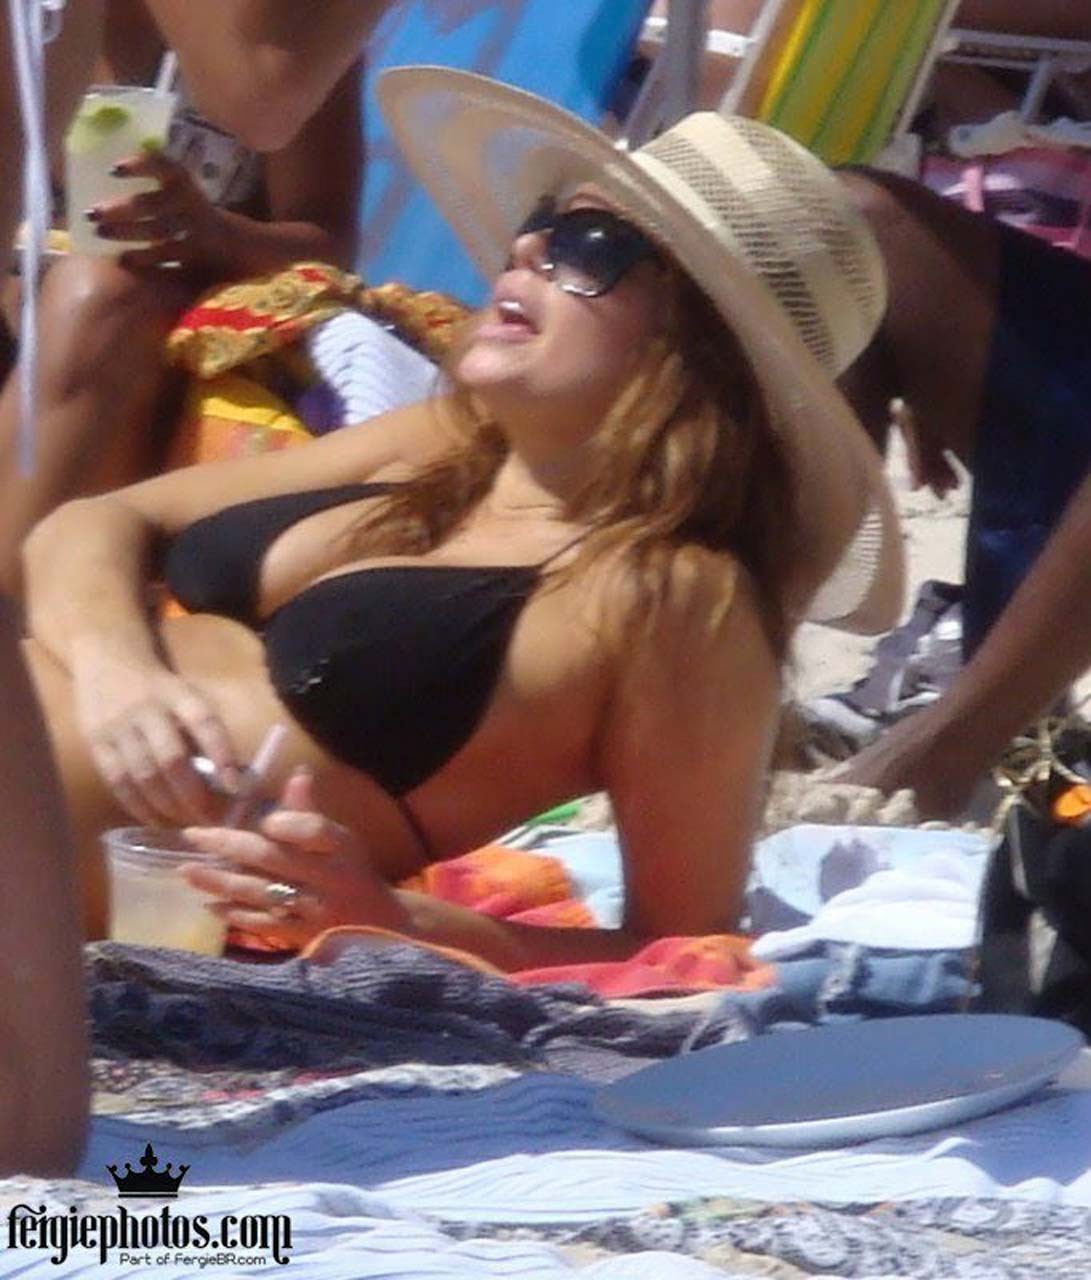 Stacy fergie ferguson esponendo il corpo sexy e culo caldo in perizoma sulla spiaggia
 #75308678